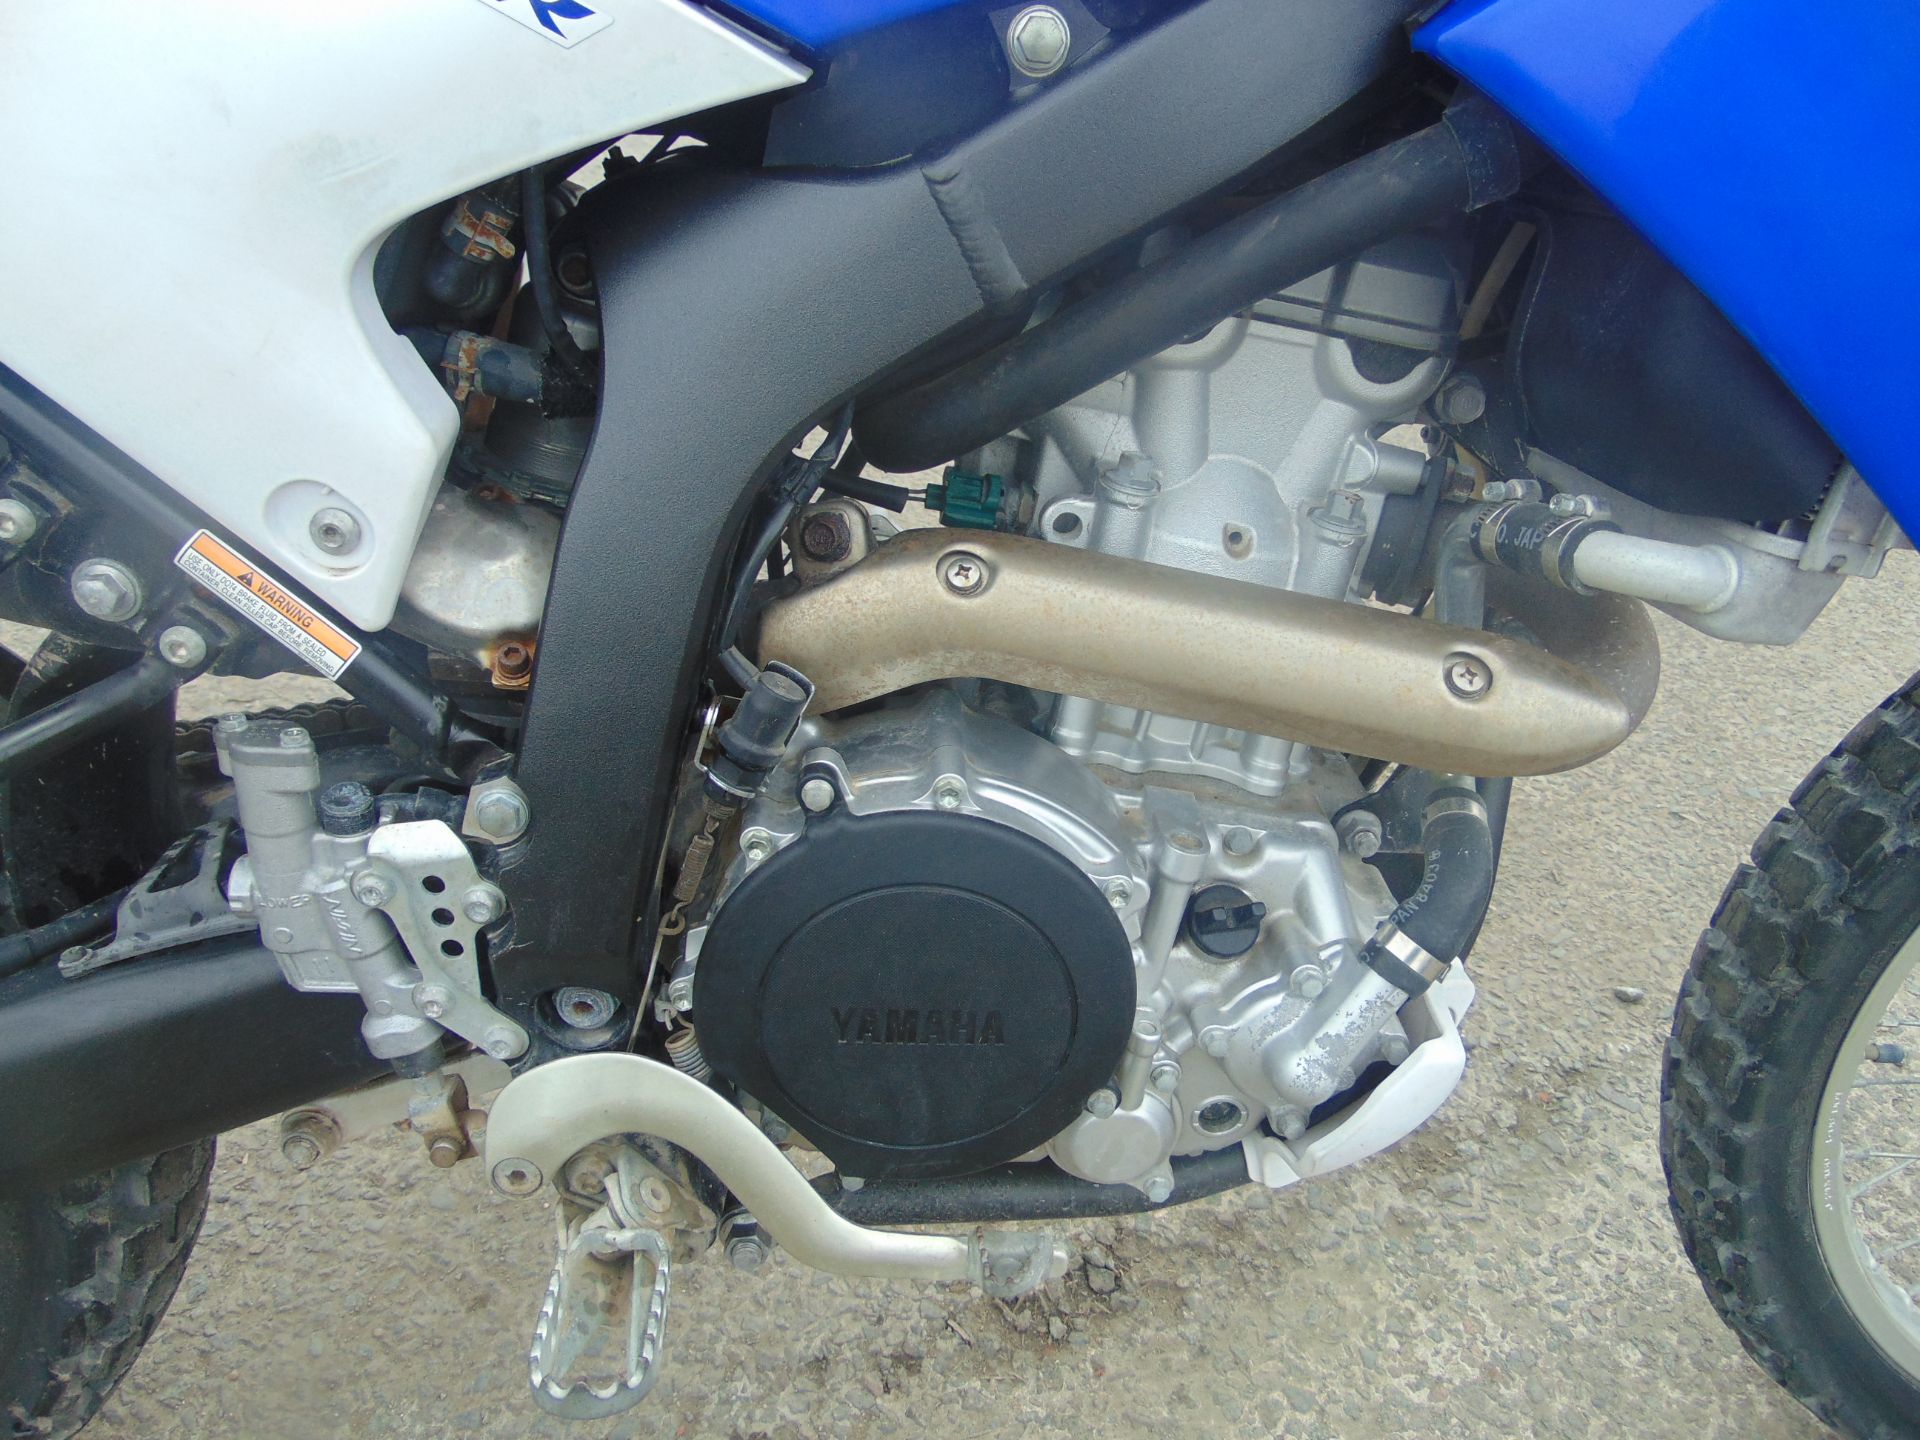 2010 Yamaha WR250R Enduro Motorbike - Image 12 of 18